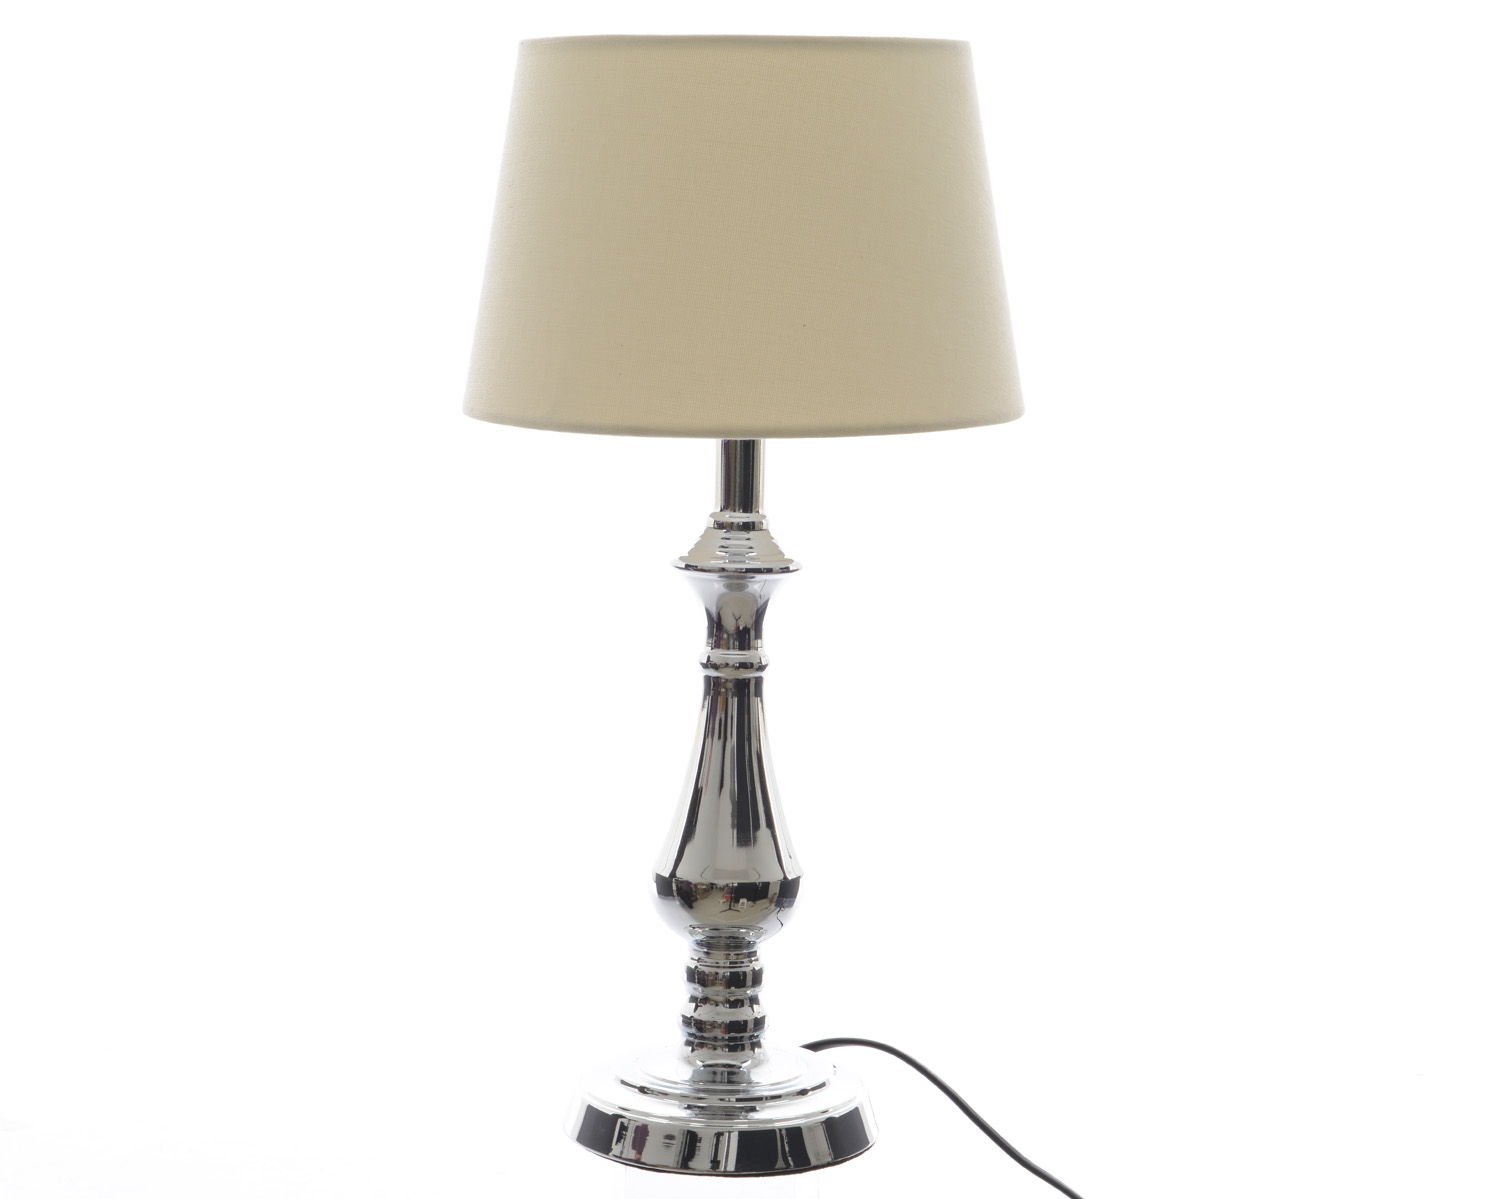 Настольная лампа КAEMINGK с абажуром 23х45 см, лён/хром, бежевый